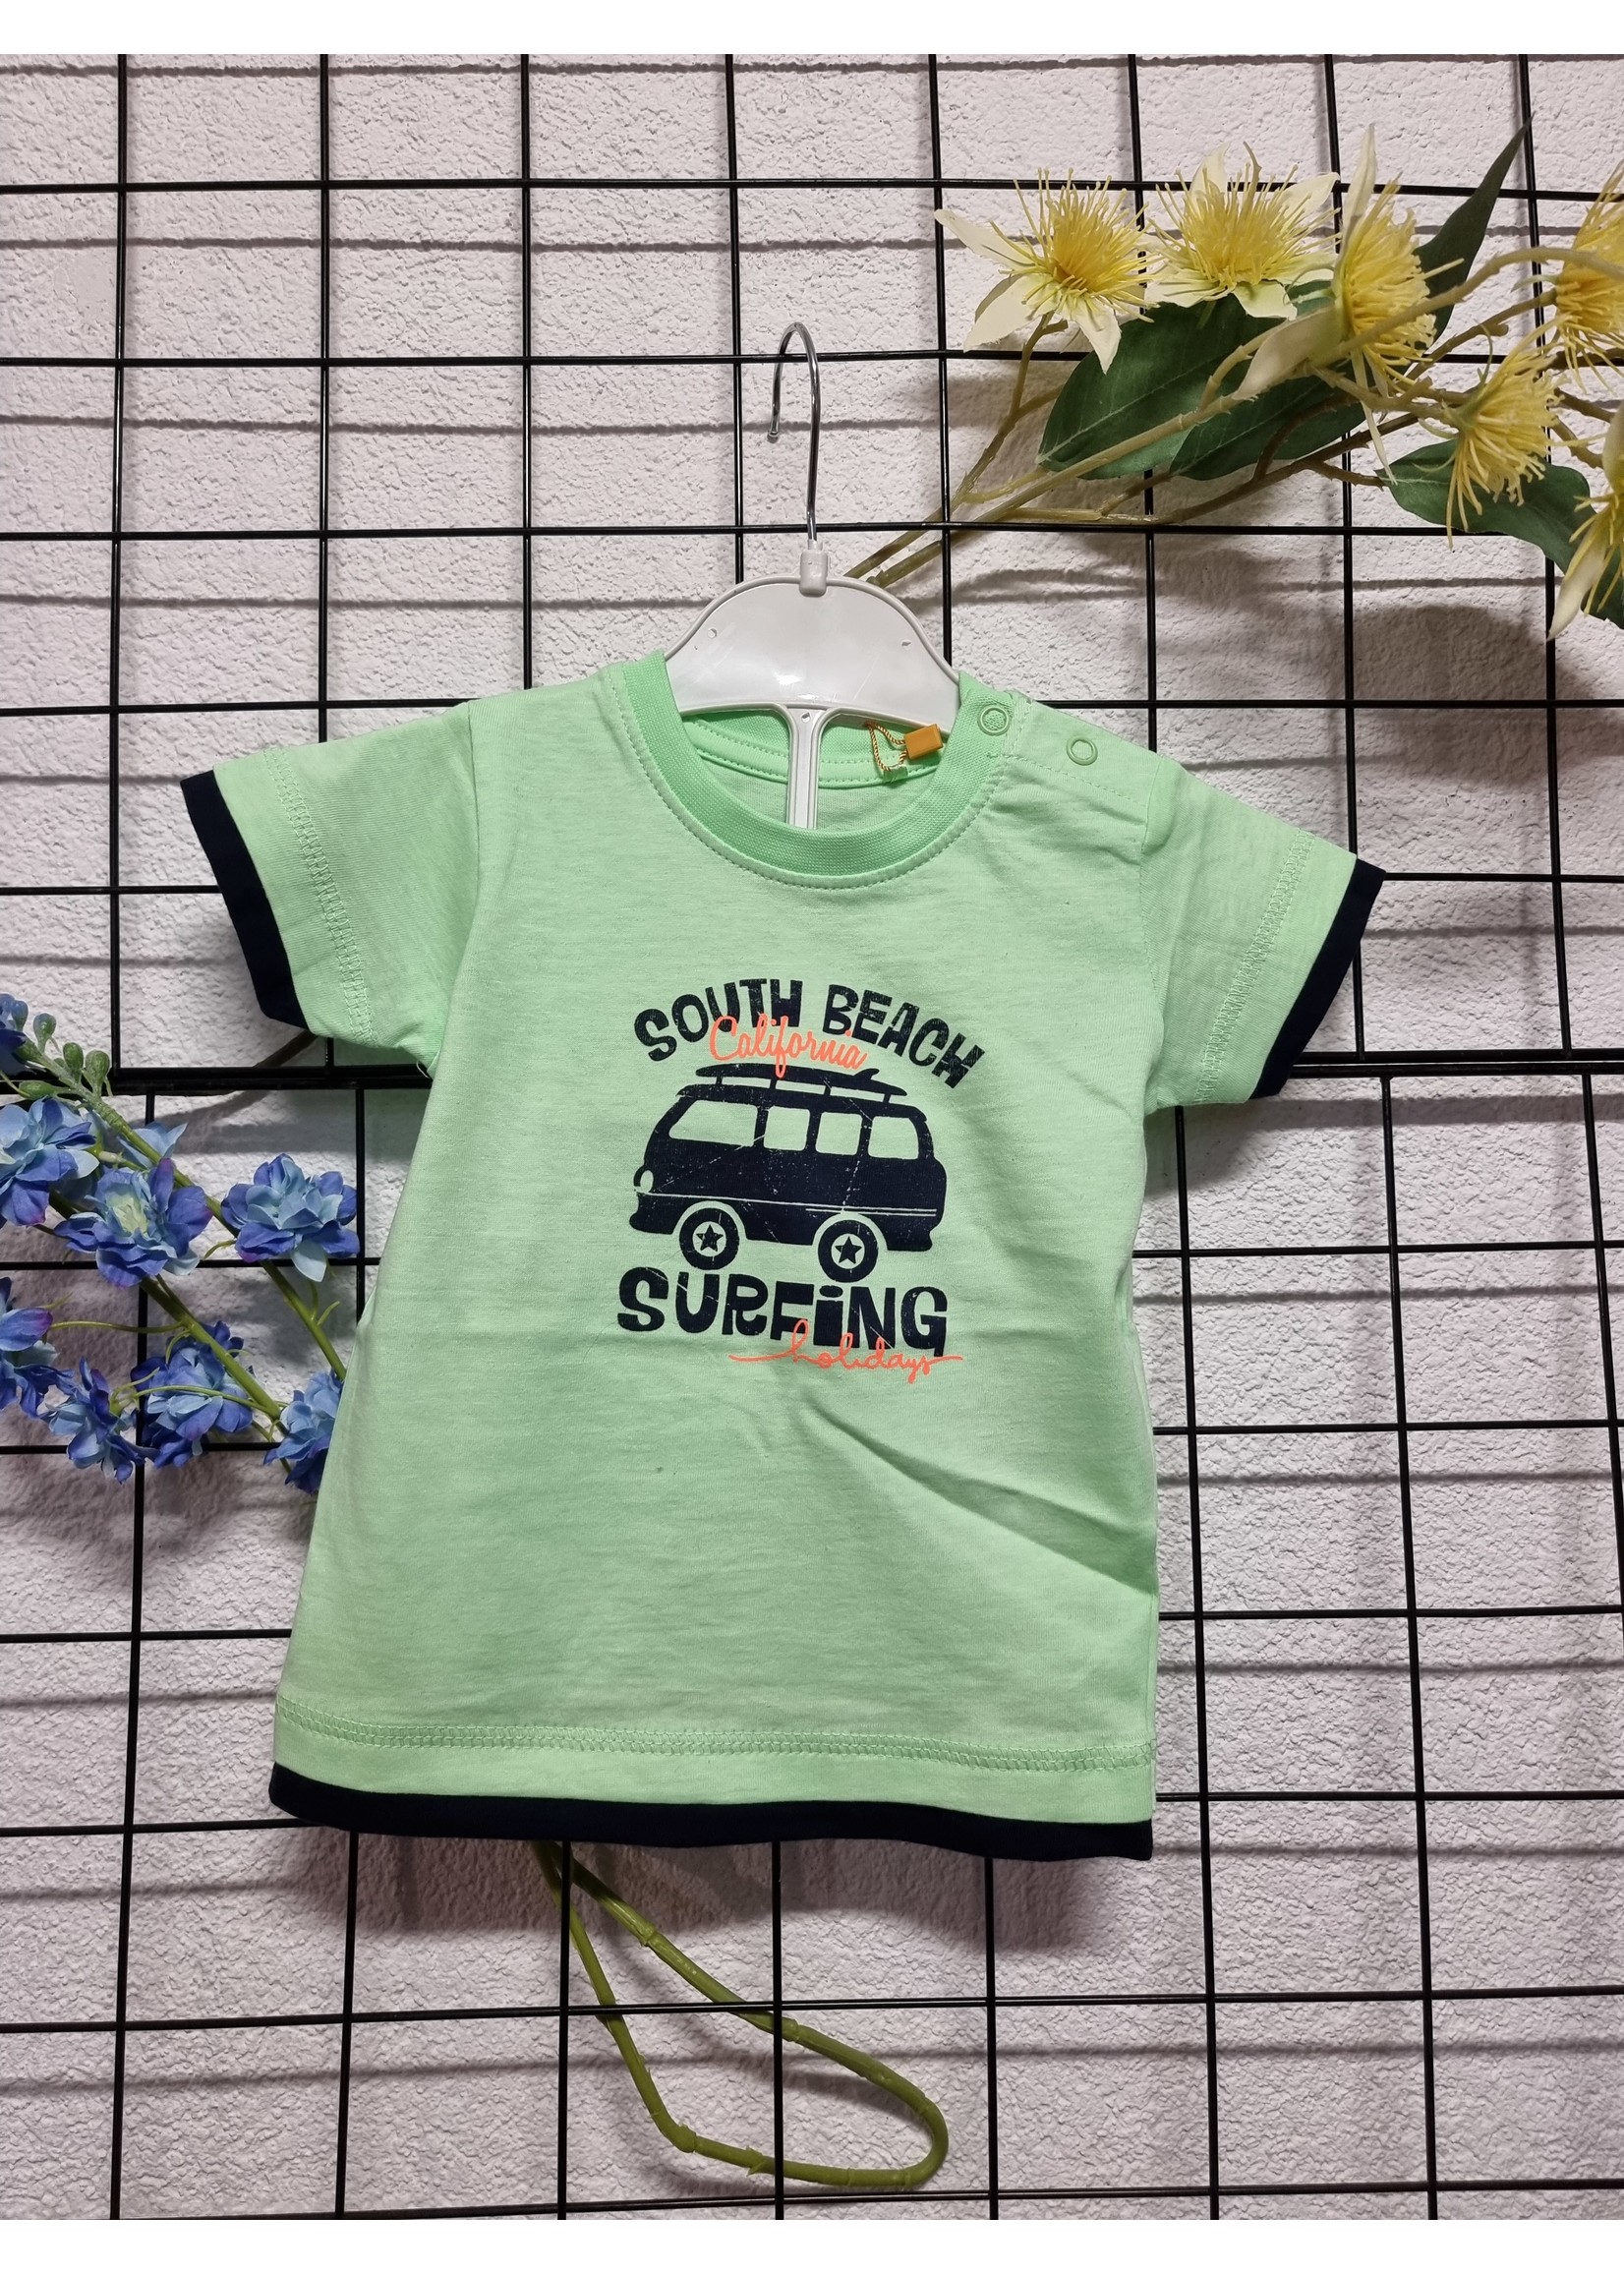 mengen Meer dan wat dan ook Promoten Baby shirt met busje lime groen - Gentlefashion